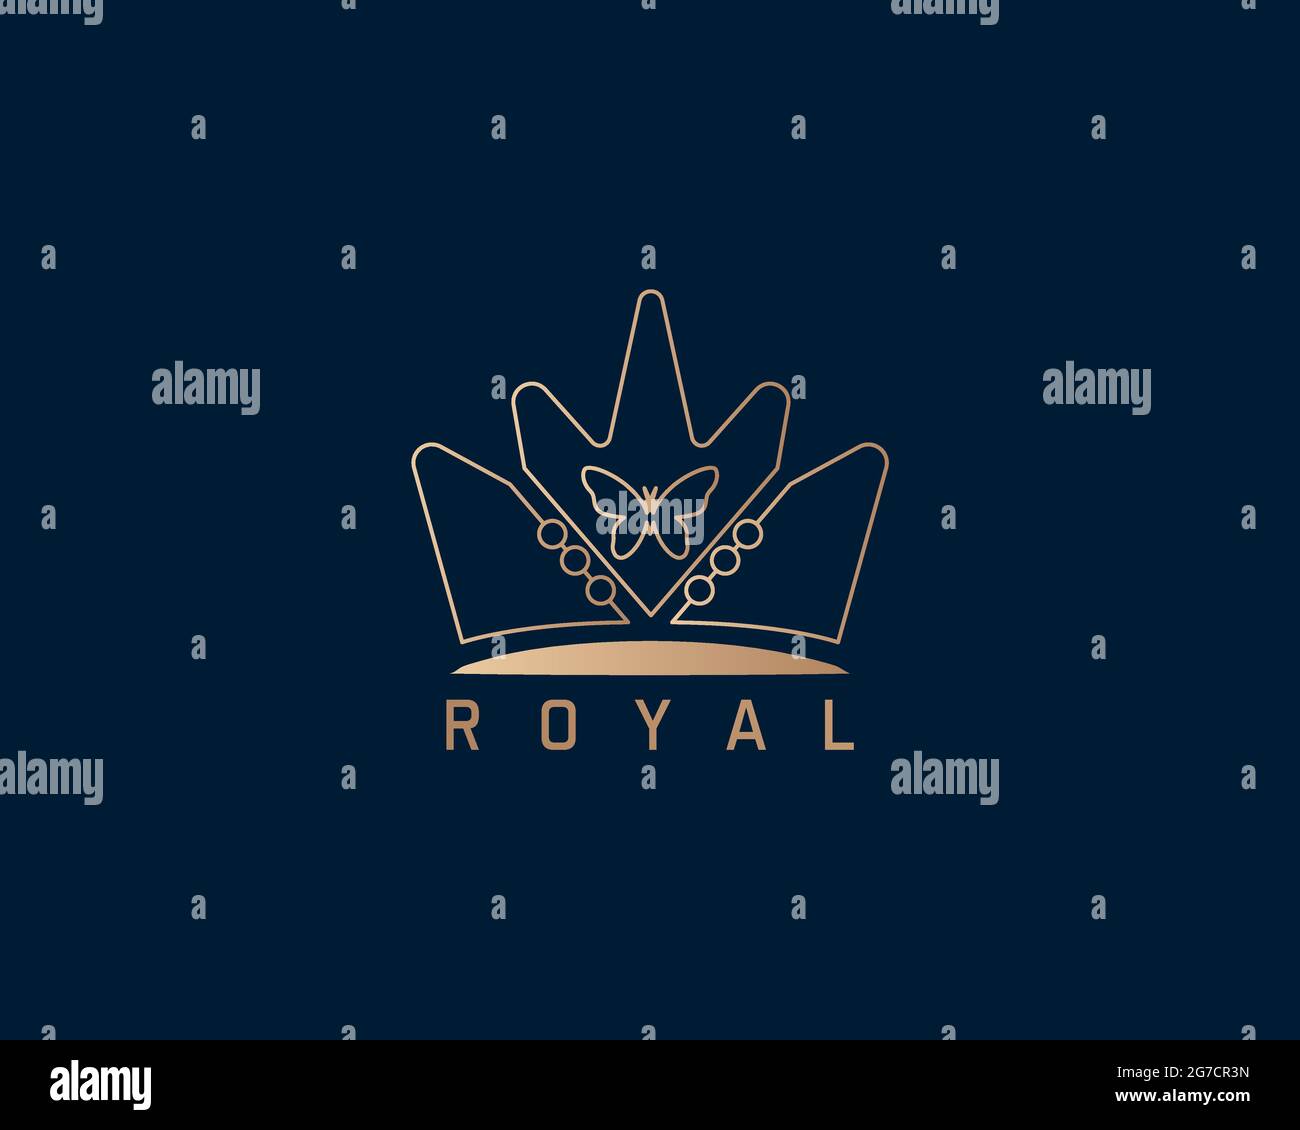 il logo crown royal golden può essere utilizzato come segno, icona o simbolo, vettore a strati completi e facile da modificare e personalizzare dimensioni e colori, compatibile con Illustrazione Vettoriale